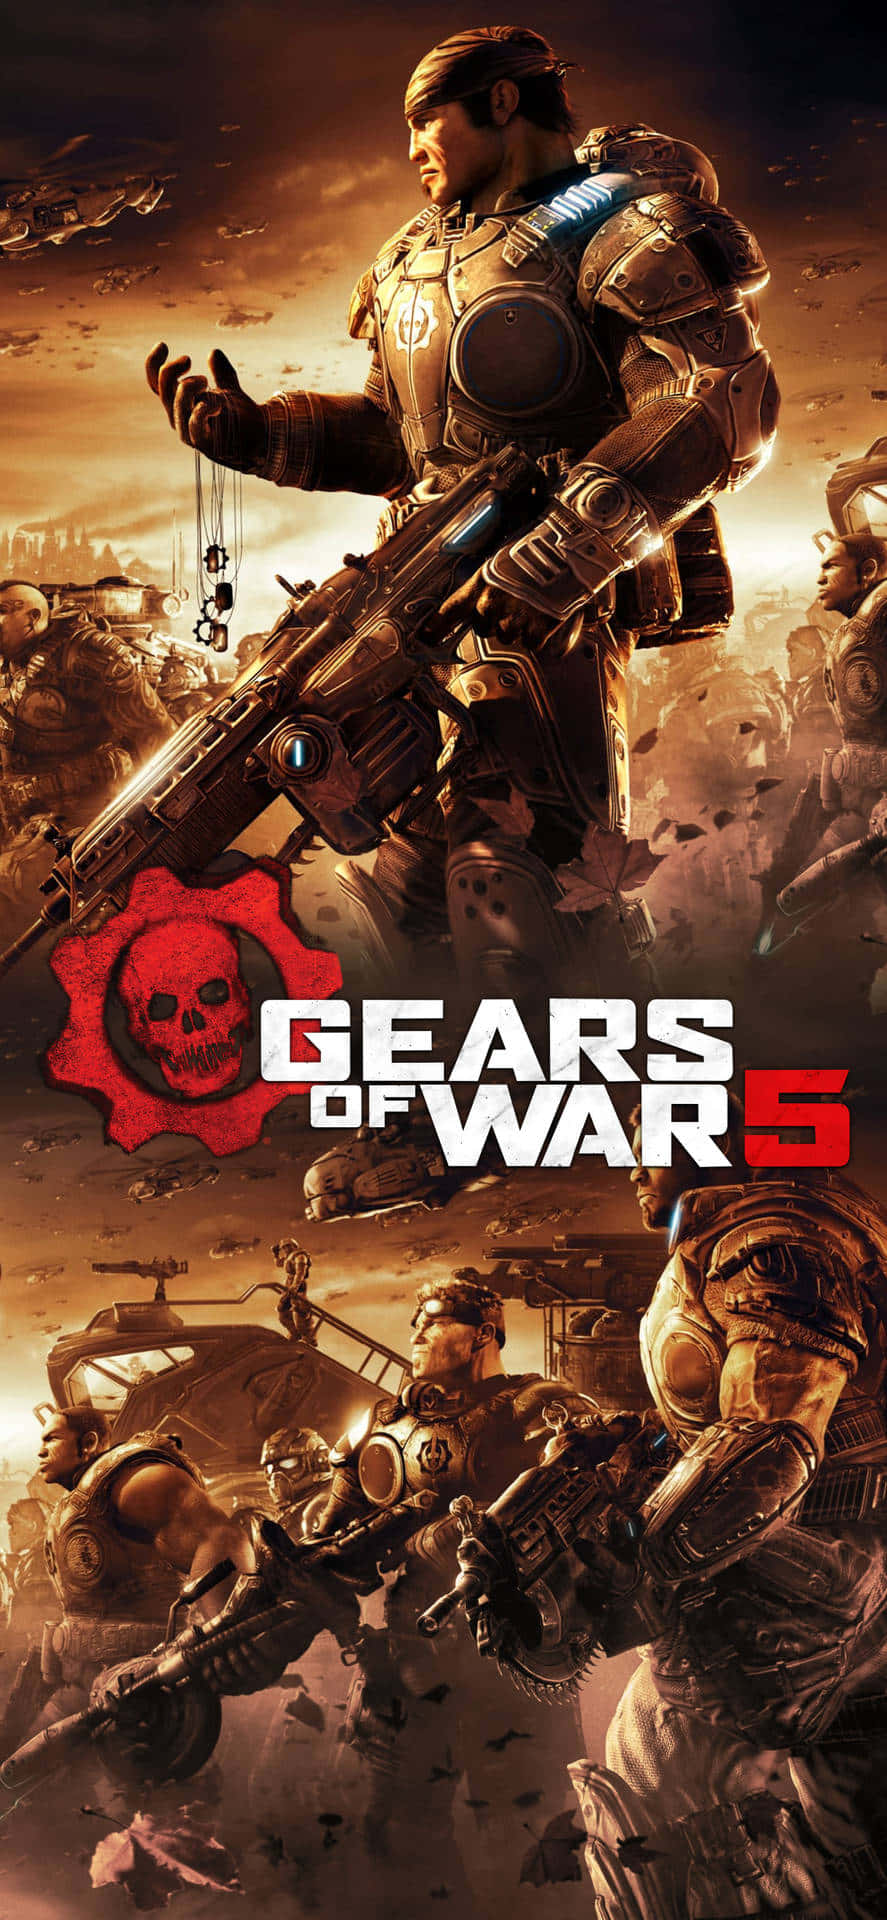 Váriospersonagens Poster Iphone Xs Gears Of War 5 Fundo De Tela.